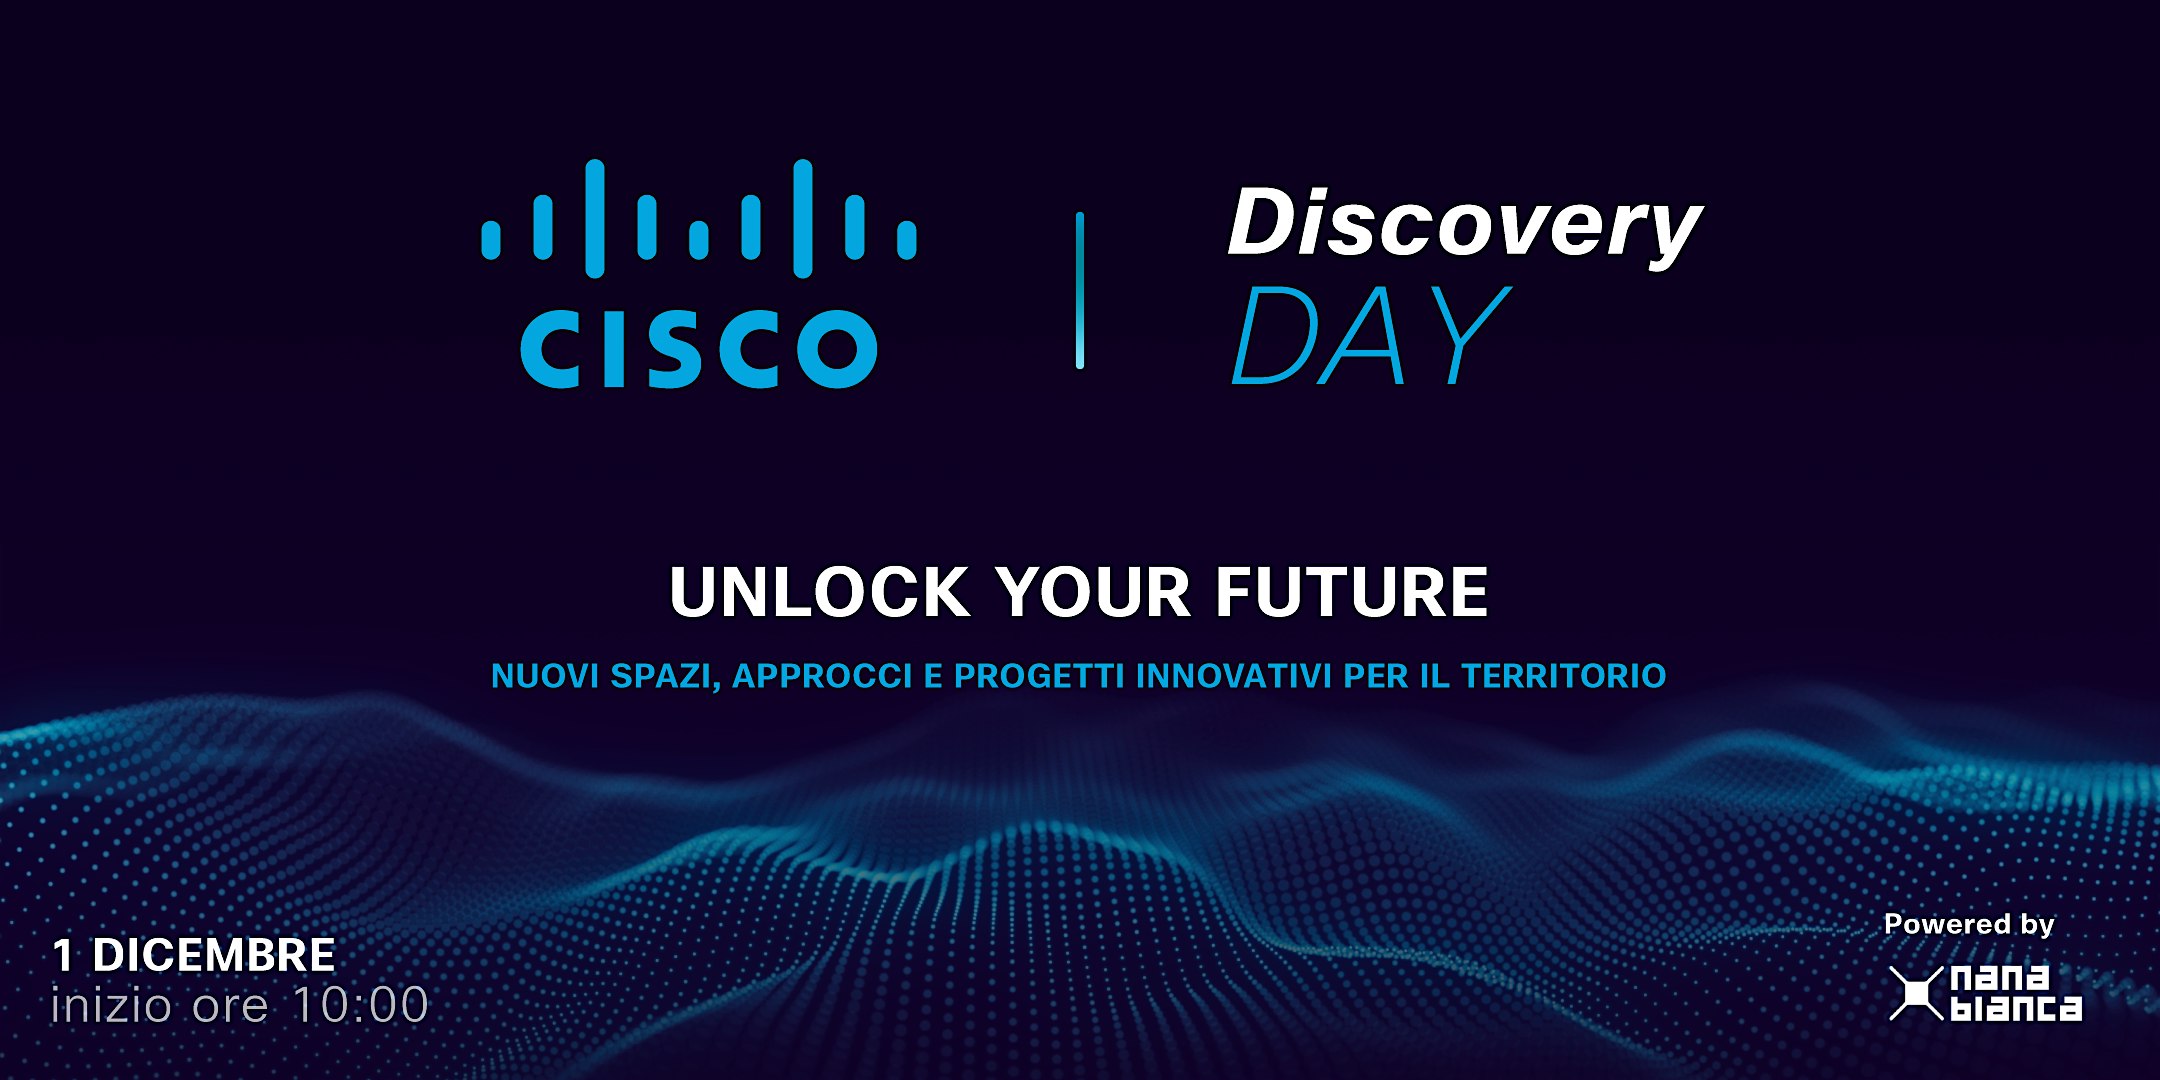 Cisco Discovery Day:  Unlock your future - Nuovi spazi, approcci e progetti